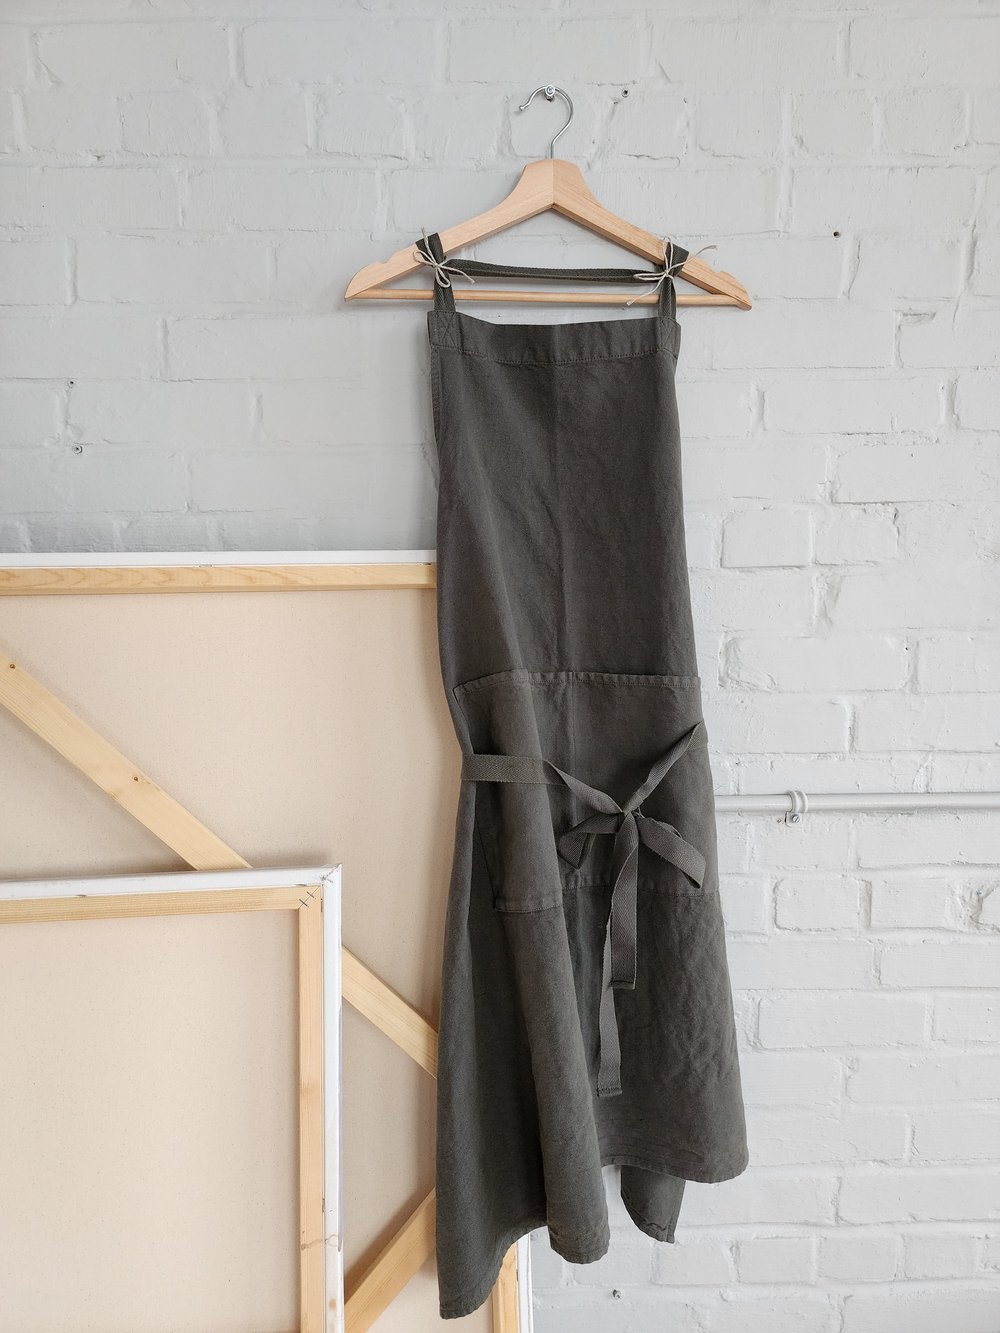 Tablier / Apron Lin & coton  Vert de gris  - Charvet — Atelier Tréma -  Céramique Bedford, QC